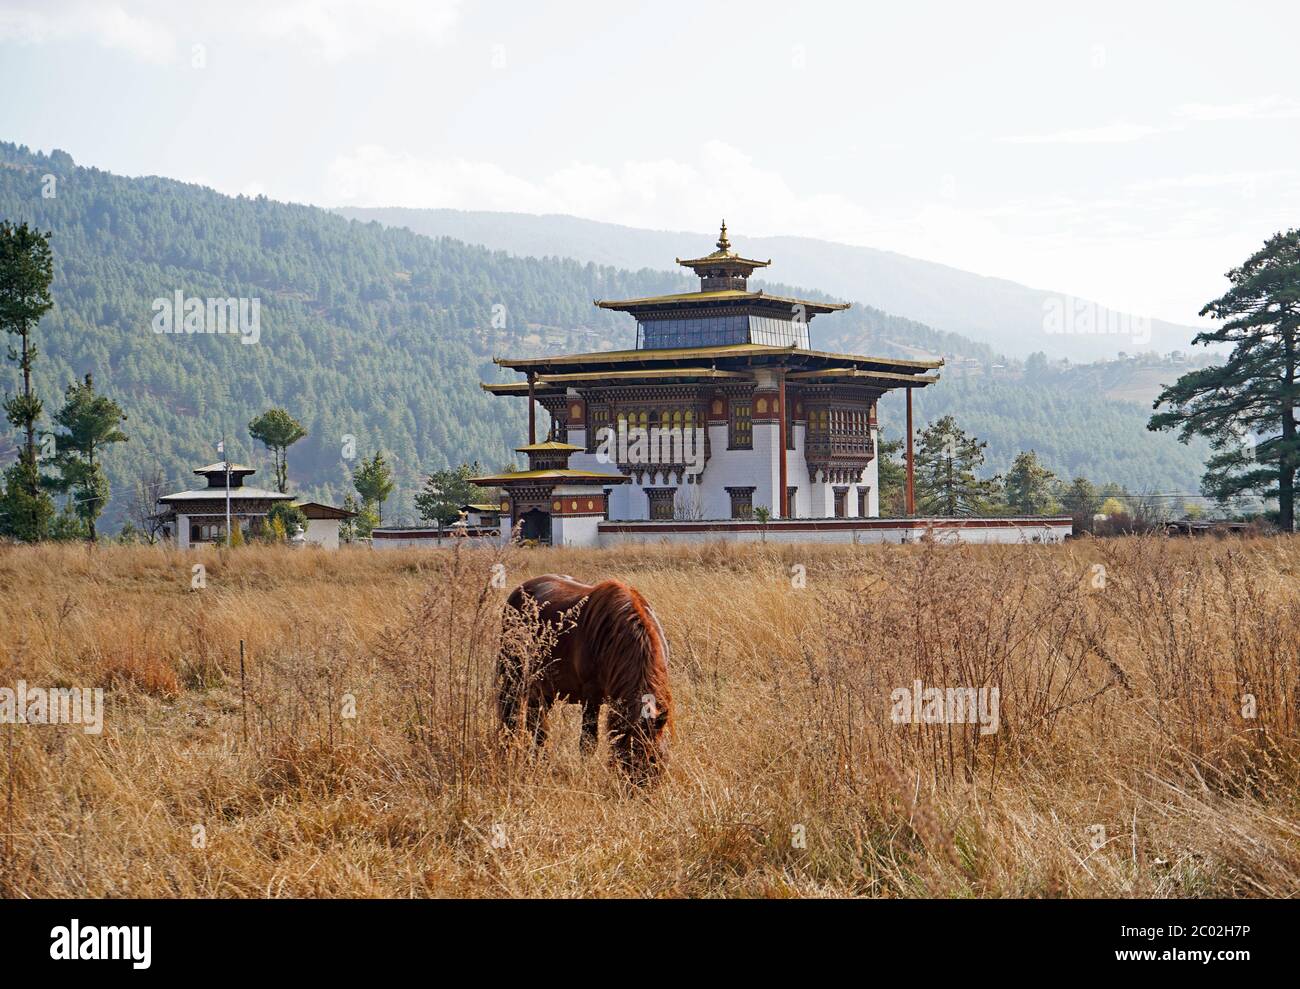 Vallée de Bumthang au Bhoutan, architecture bhoutanaise traditionnelle et cheval Banque D'Images